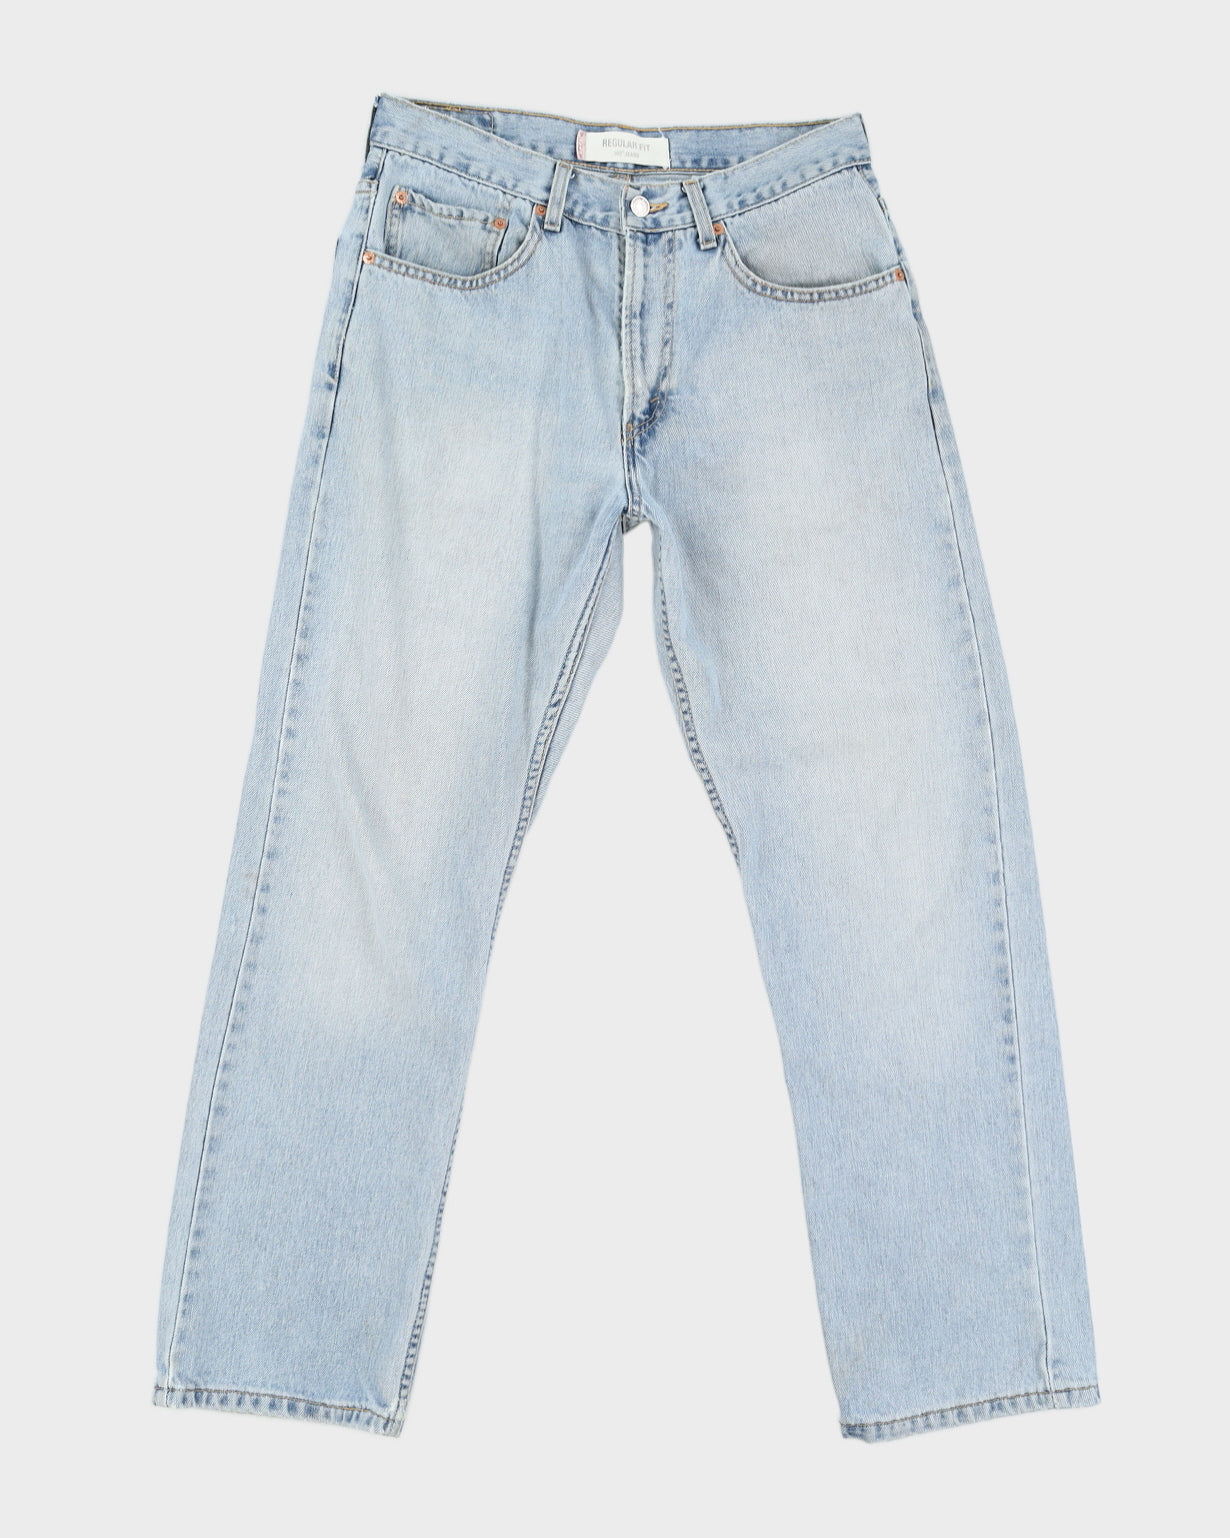 90s Levi's 505 Blue Jeans - W32 L30